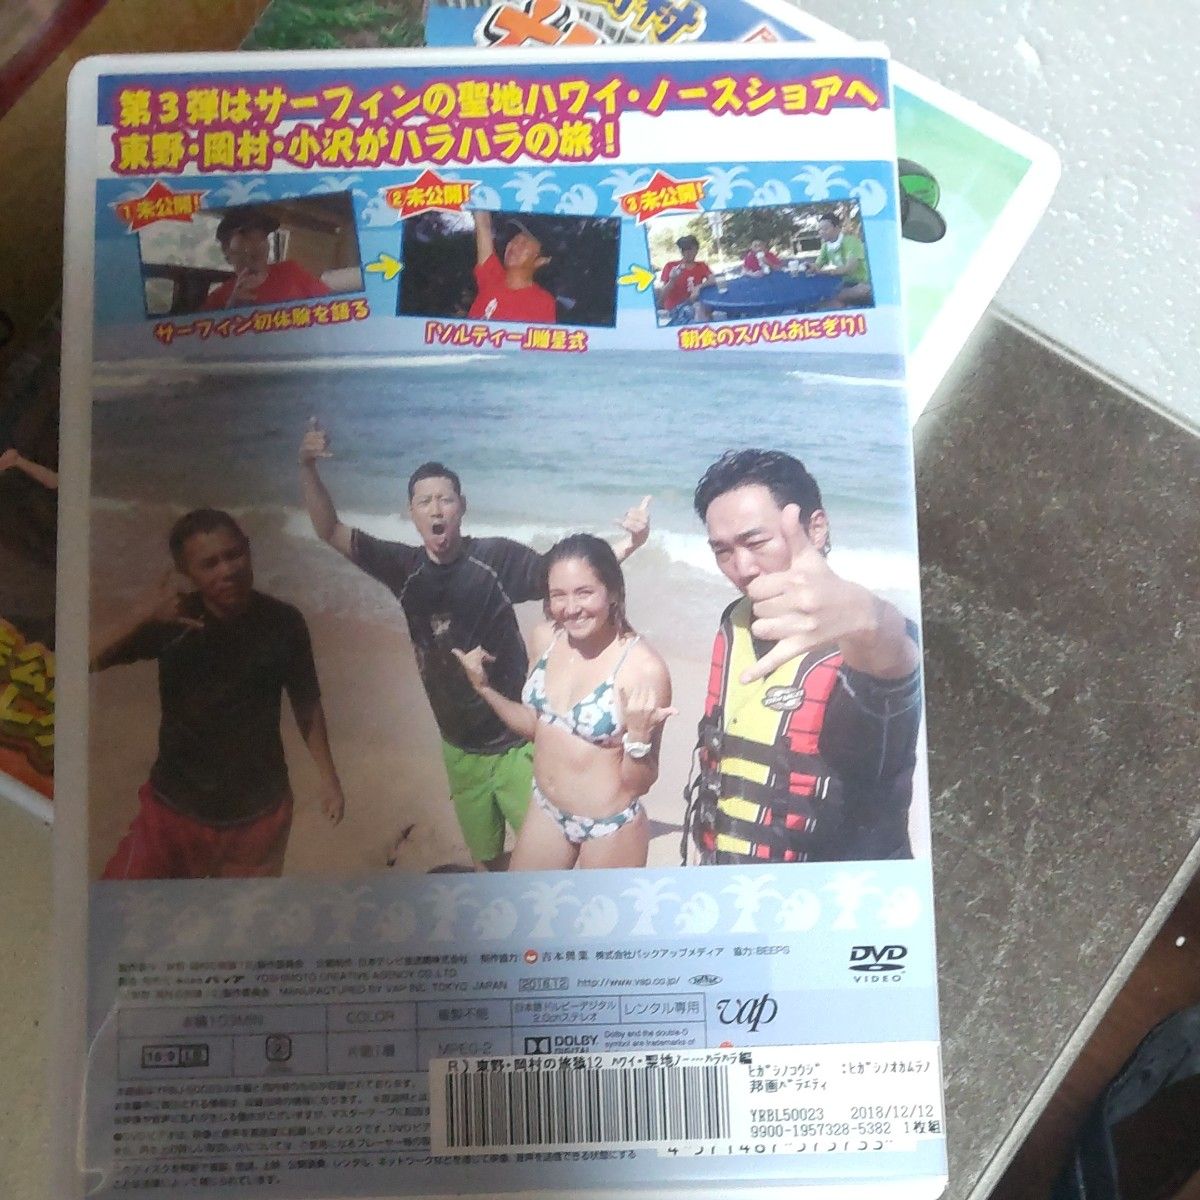 旅猿 東野 岡村の旅猿 DVDハワイの旅